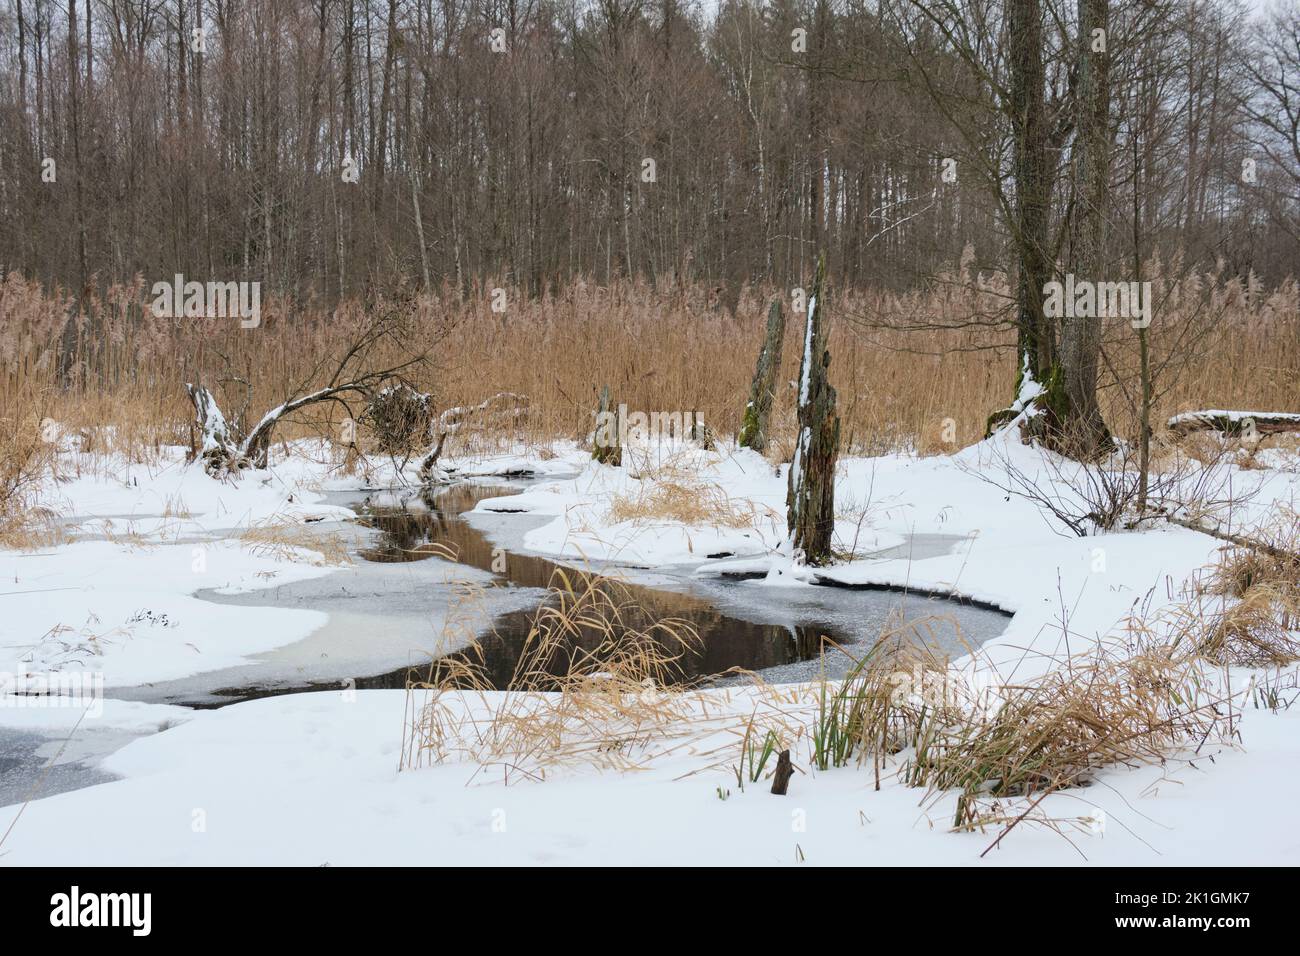 Paysage hivernal de la rivière Lesna gelée en journée nuageux avec roseau sèche en arrière-plan, Podlasie Voivodeship, Pologne, Europe Banque D'Images